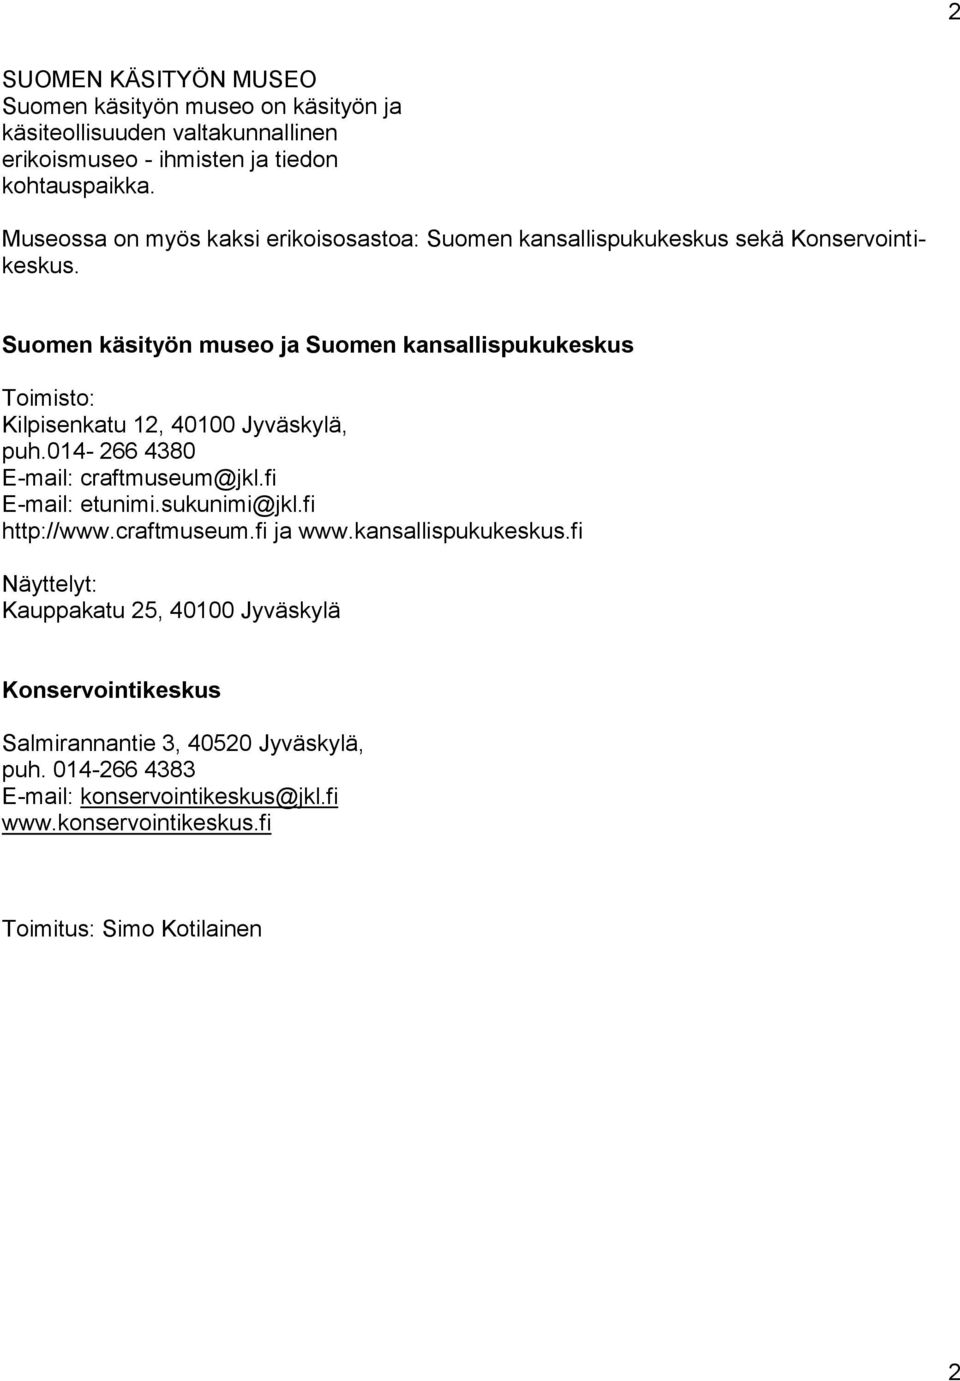 Suomen käsityön museo ja Suomen kansallispukukeskus Toimisto: Kilpisenkatu 12, 40100 Jyväskylä, puh.014-266 4380 E-mail: craftmuseum@jkl.fi E-mail: etunimi.